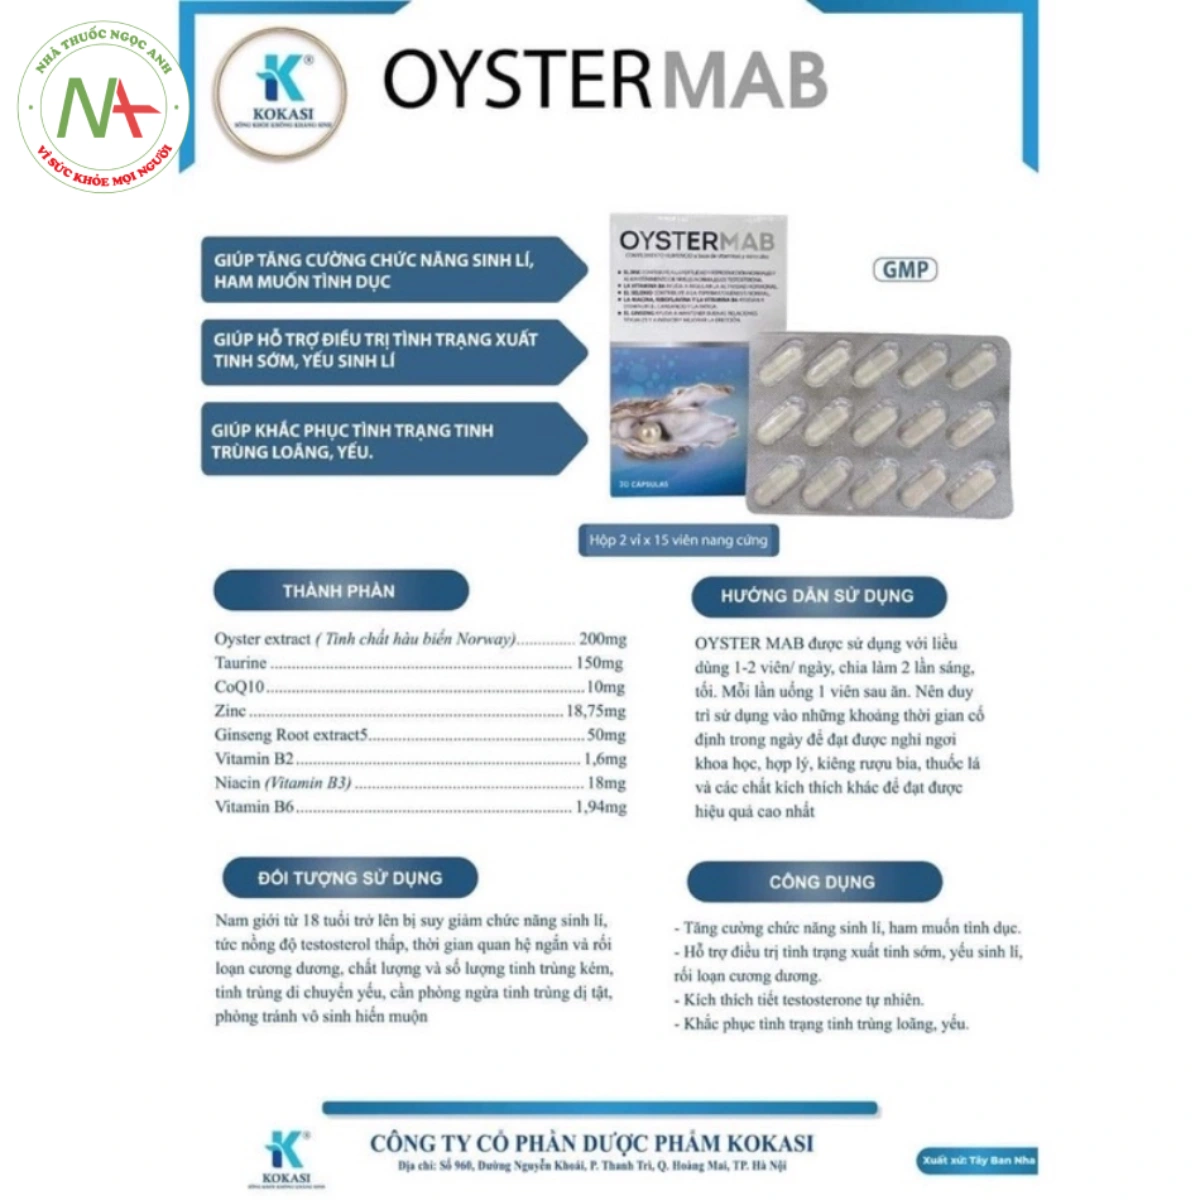 Hướng dẫn sử dụng sản phẩm Oyster Mab